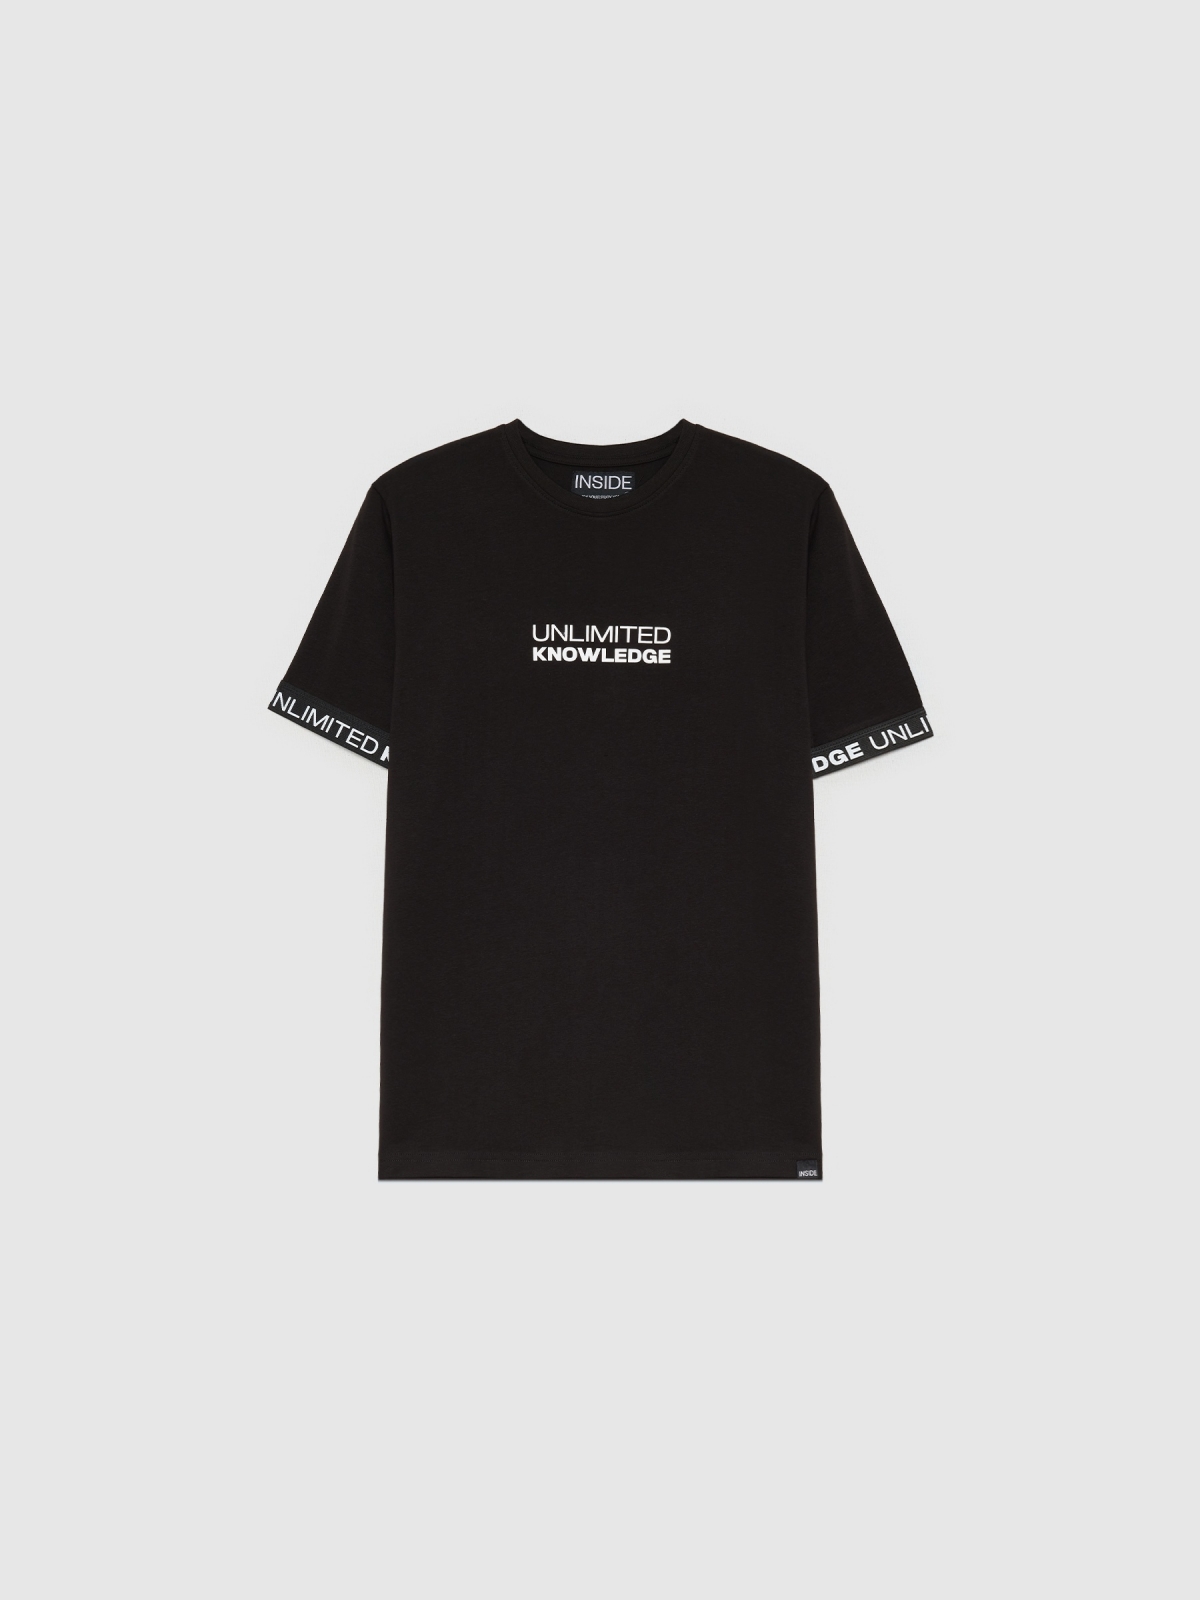  T-shirt desportiva com mangas em contraste preto